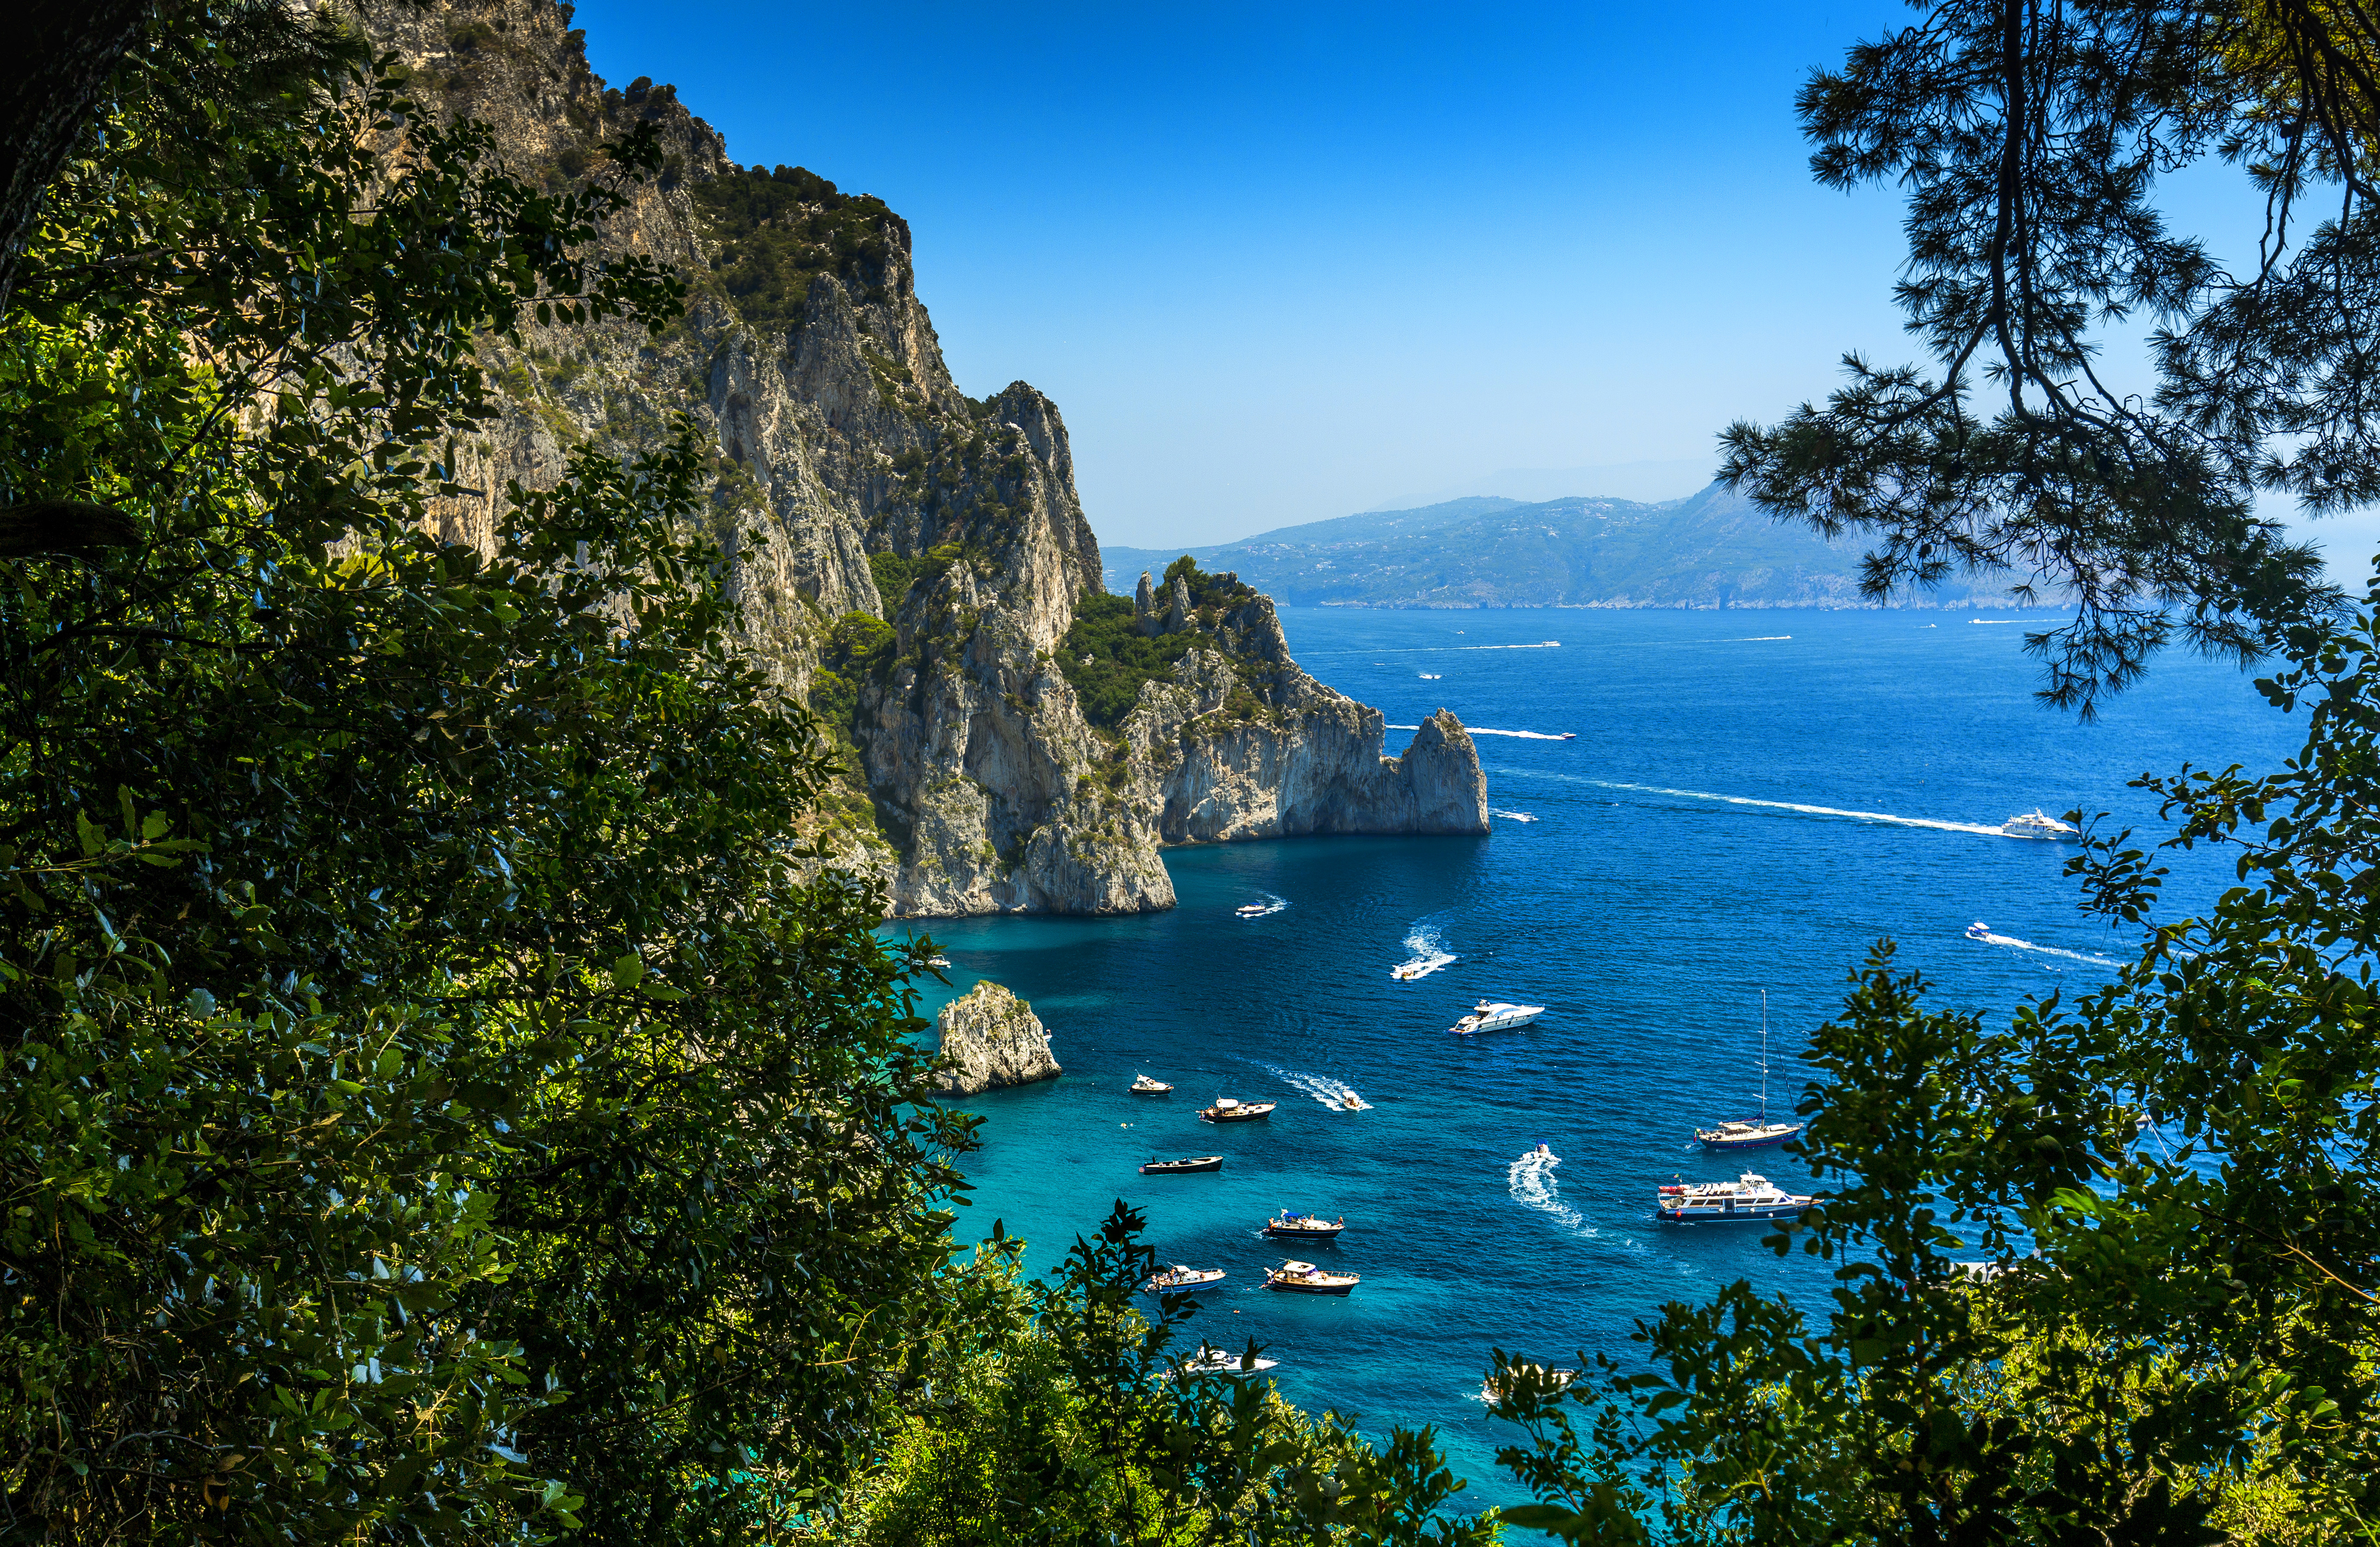 Капри, италия — путеводитель, где остановиться, погода в капри на 10 и 14 дней и многое другое на туристер.ру